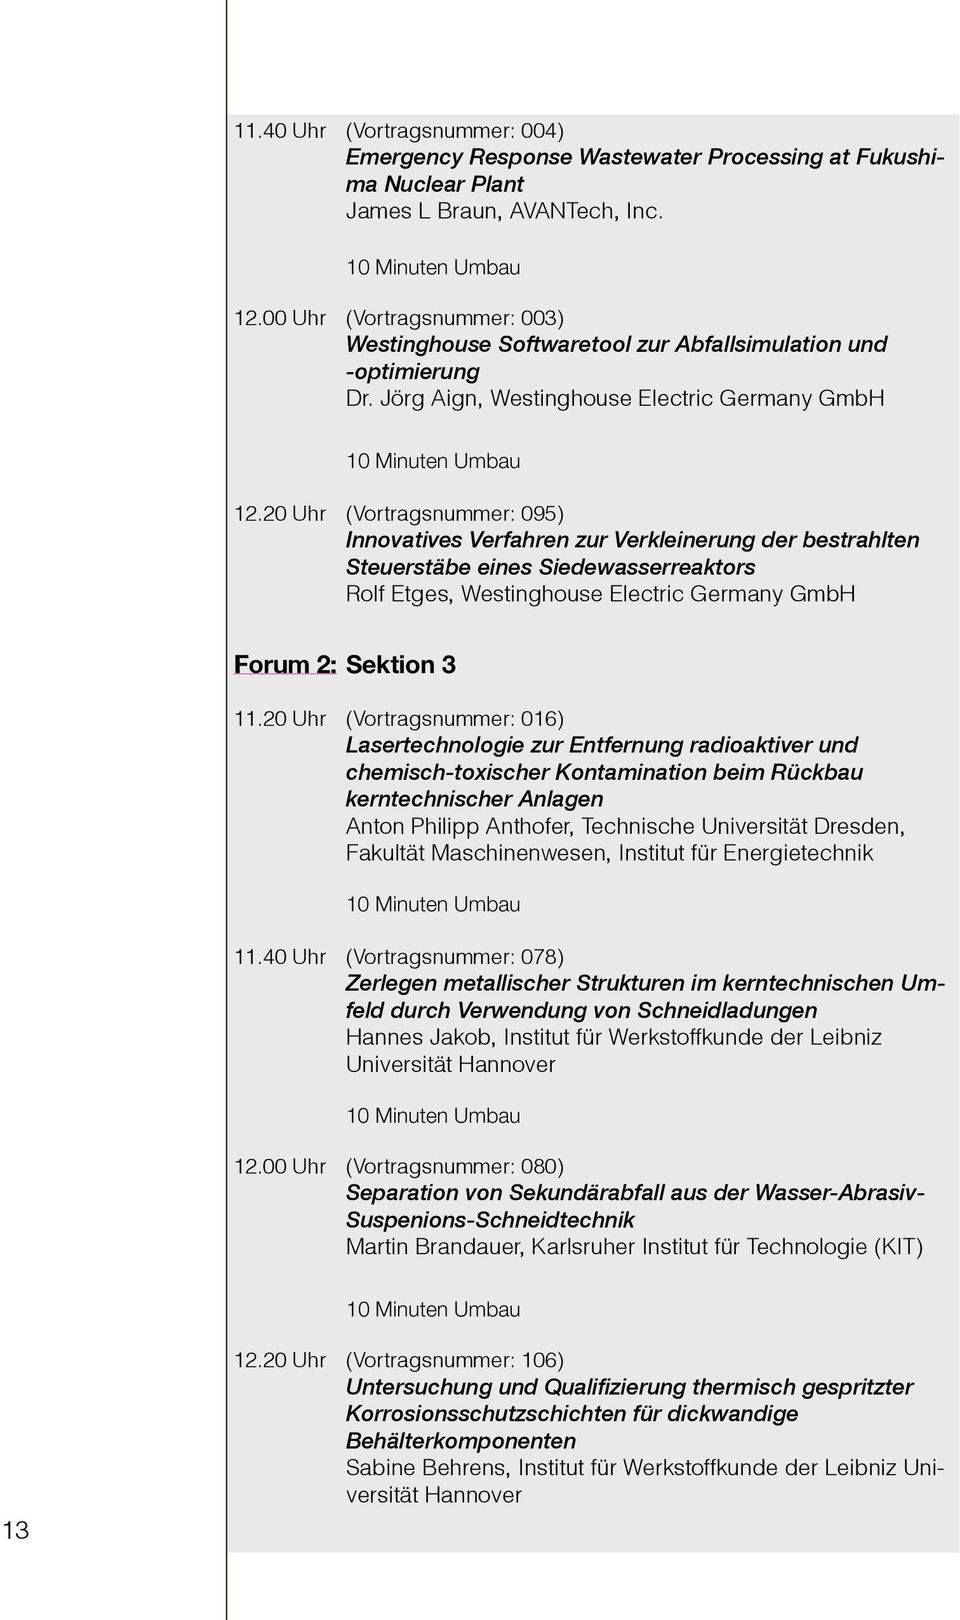 20 Uhr (Vortragsnummer: 095) Innovatives Verfahren zur Verkleinerung der bestrahlten Steuerstäbe eines Siedewasserreaktors Rolf Etges, Westinghouse Electric Germany GmbH Forum 2: Sektion 3 11.